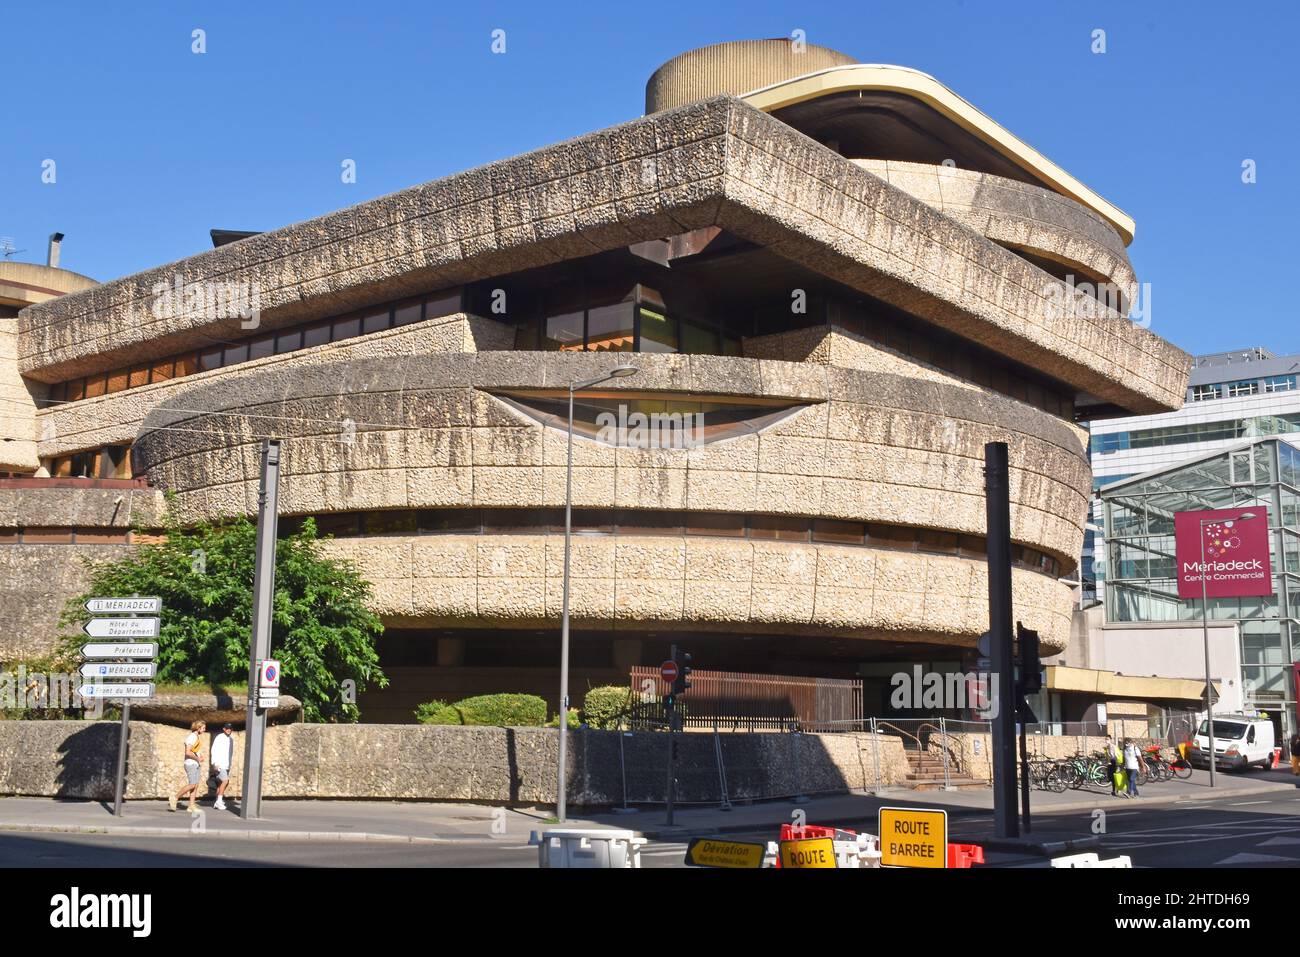 Arquitectura brutalista: La antigua sede central de un banco en el Centro Mériadeck de Burdeos se está reacondicionando en la actualidad a un centro cultural, tiendas y lofts Foto de stock